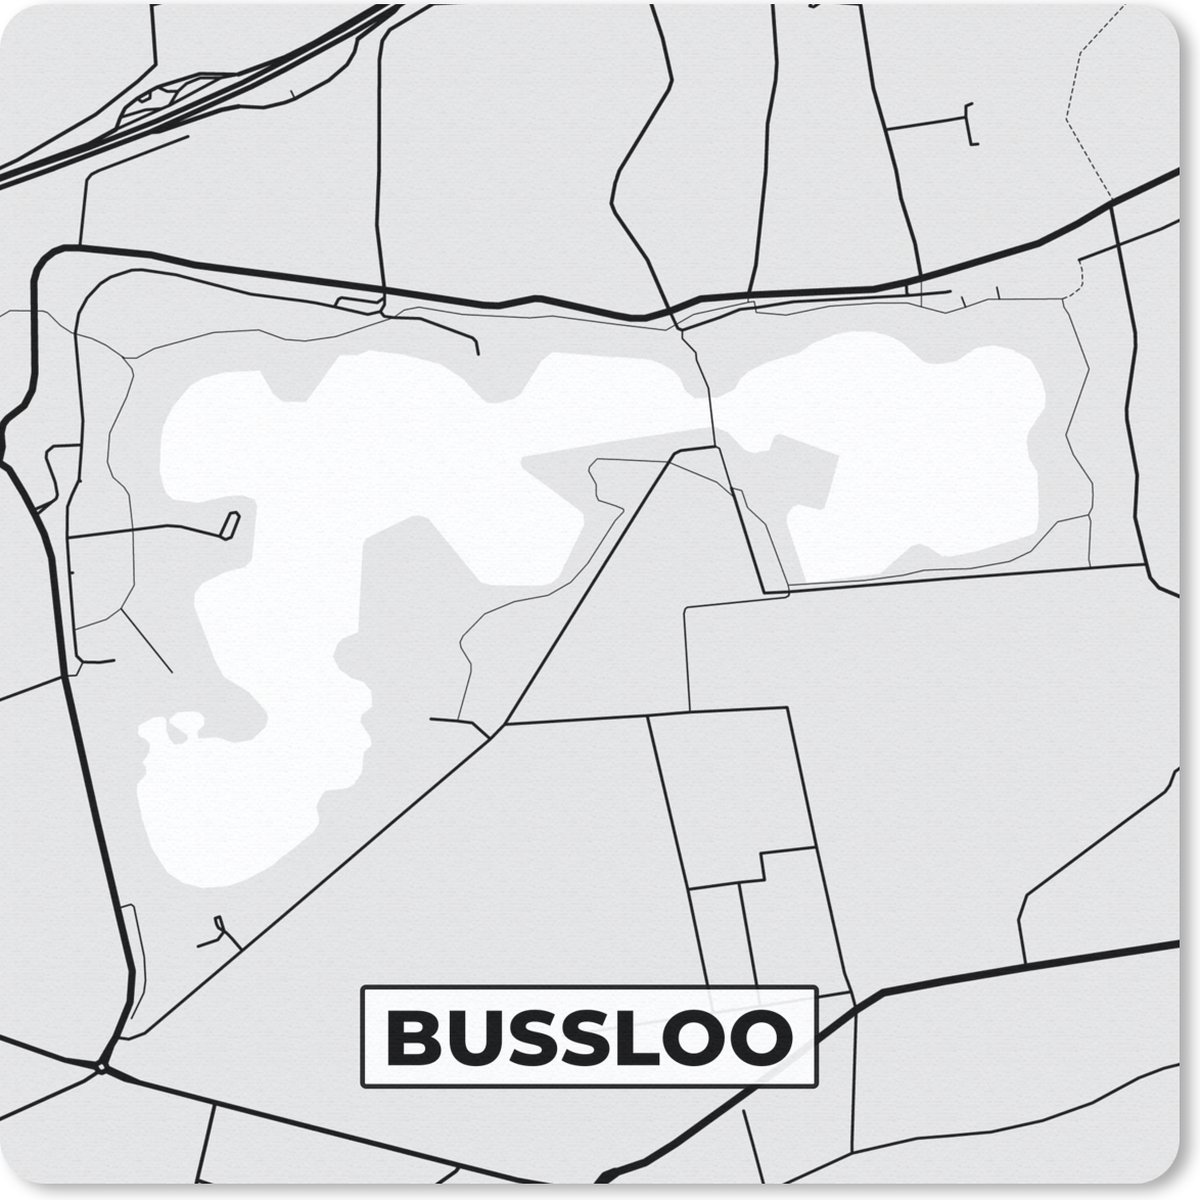 Muismat - Mousepad - Kaart - Bussloo - Stadskaart - Plattegrond - Nederland - 30x30 cm - Muismatten